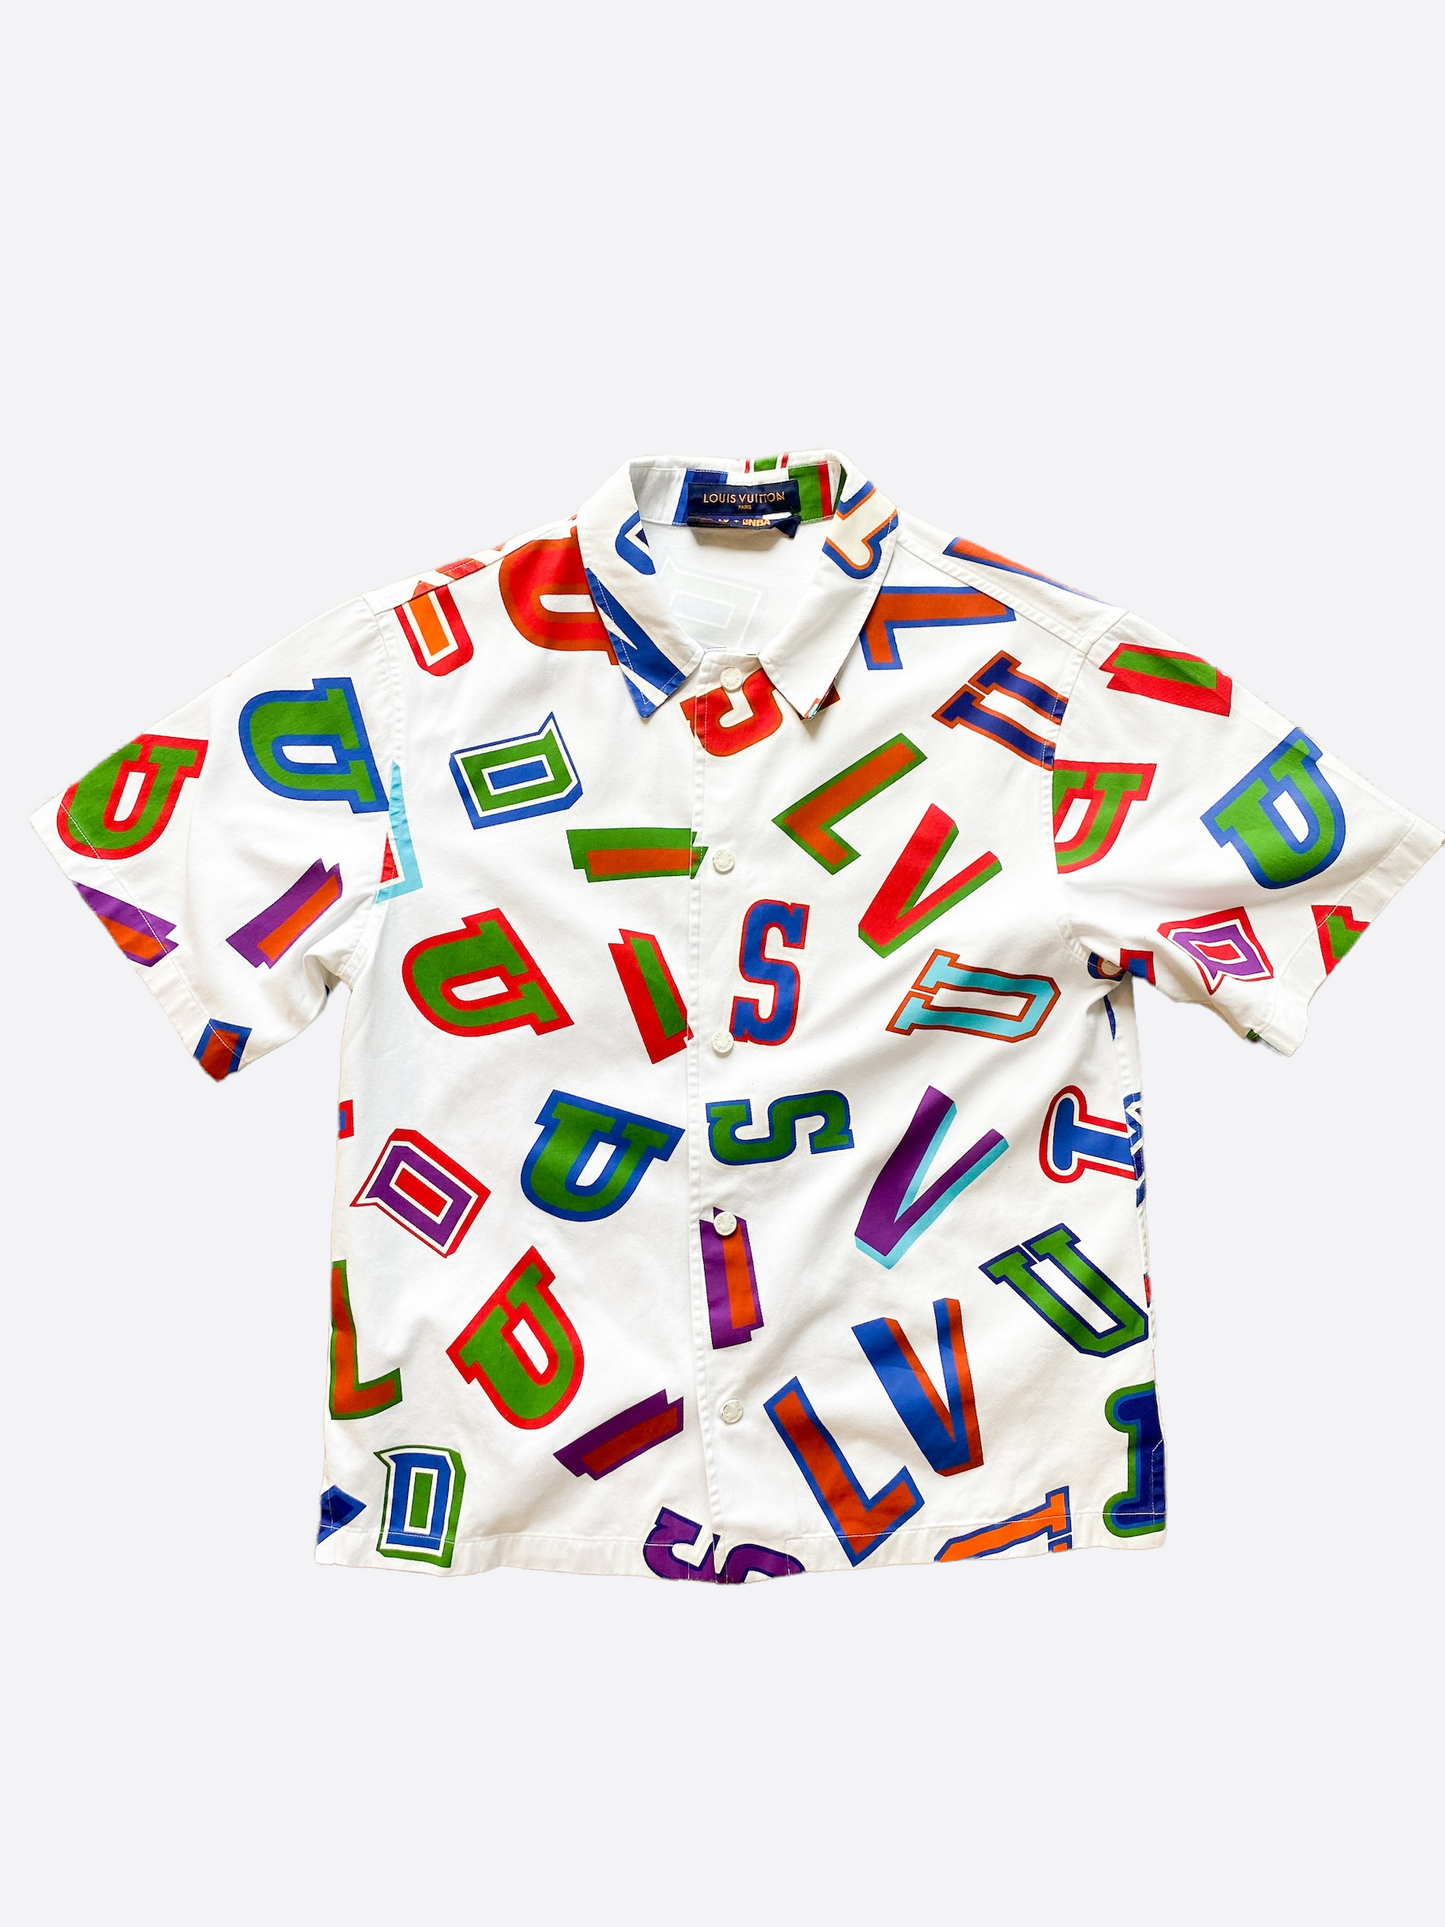 Louis Vuitton Multicolor Monogram Button Up Shirt